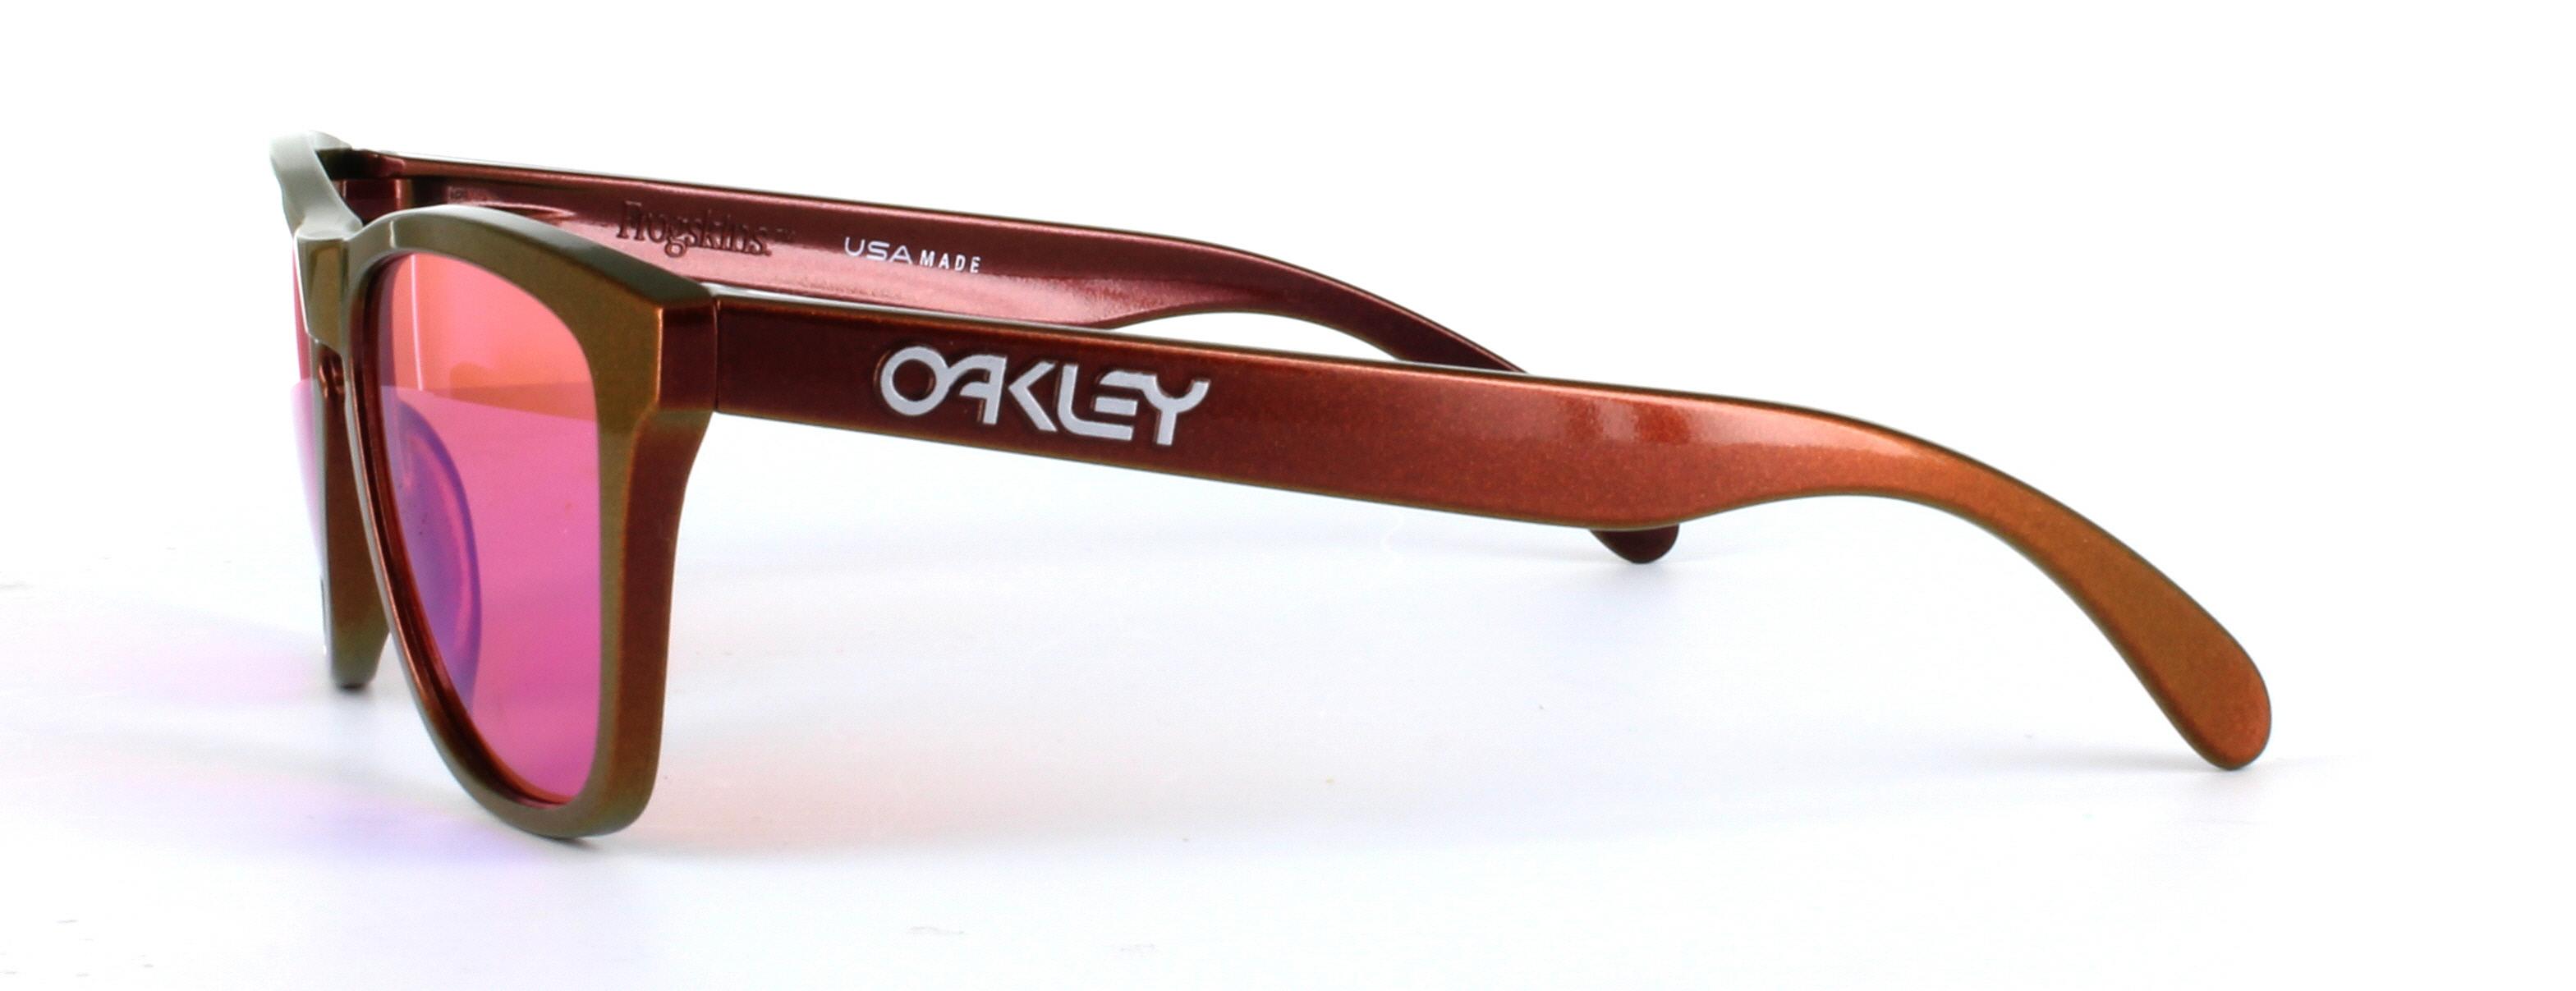 Oakley Prescription Sunglasses in Copper | Glasses2You